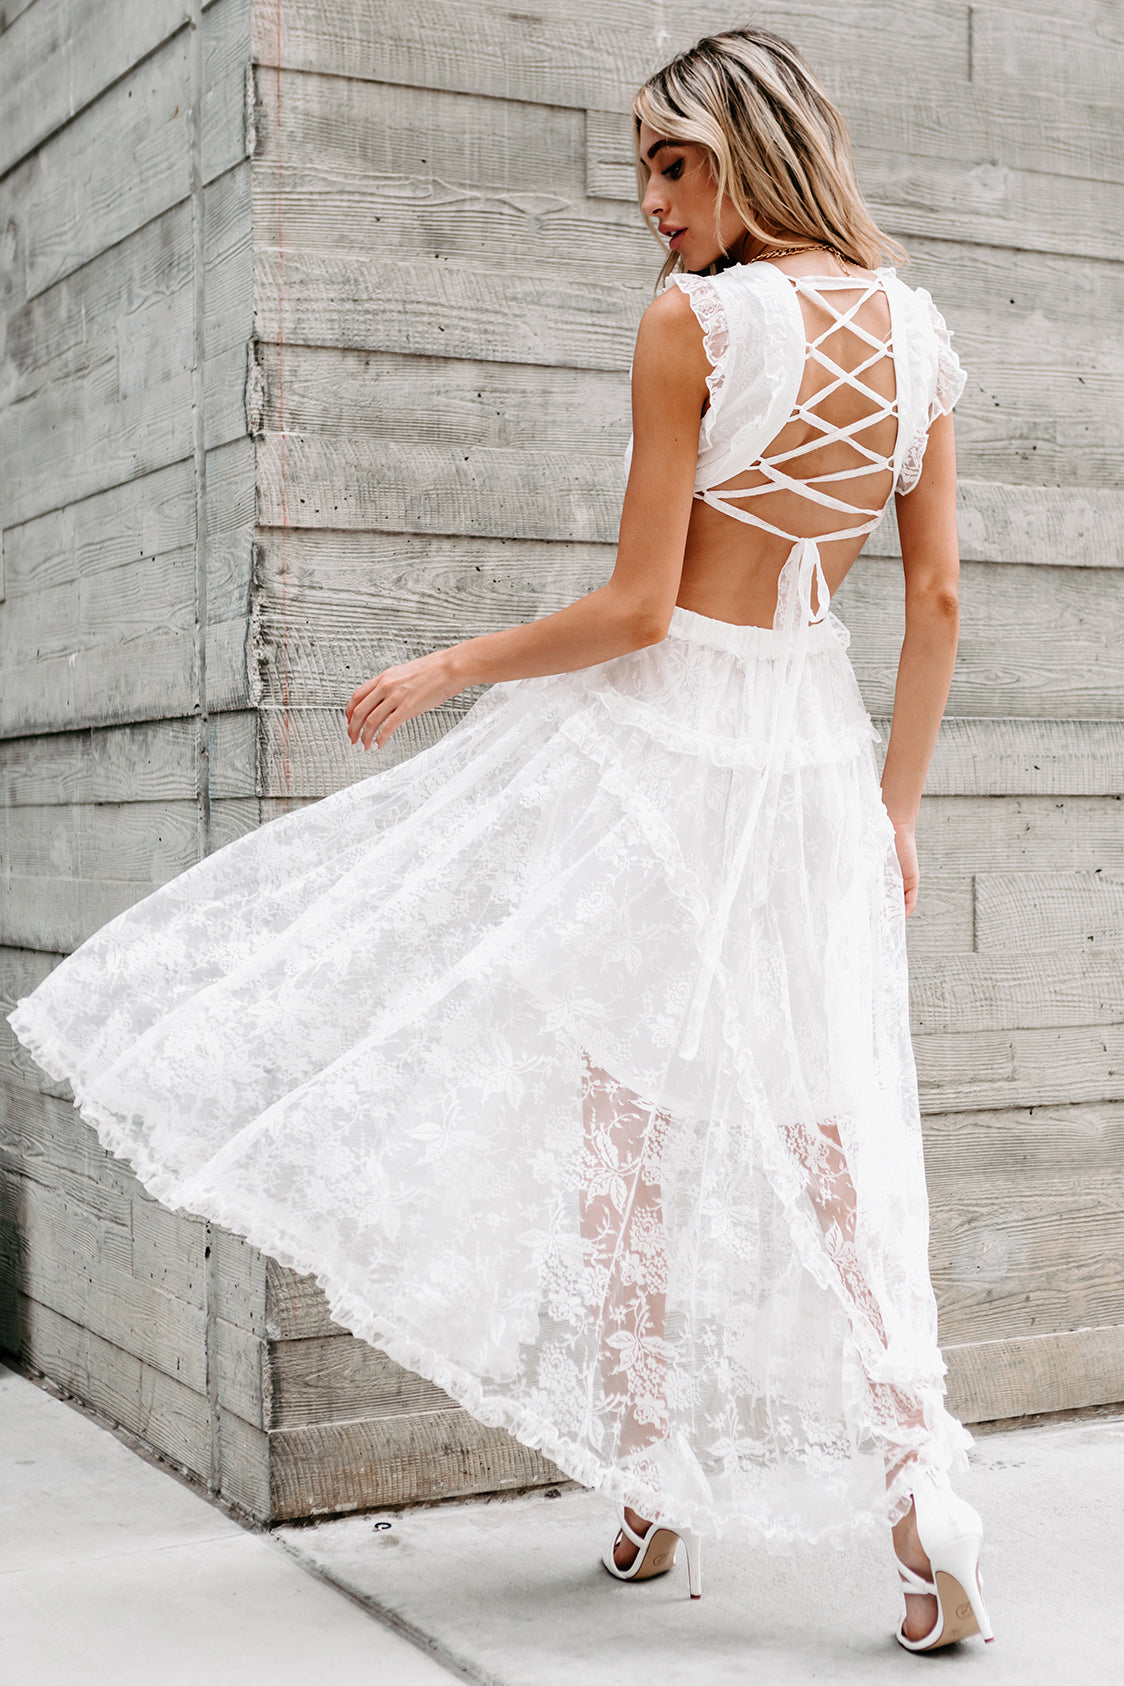 Sway My Way Ruffled Cut-Out Waist Lace Dress (Ivory) - NanaMacs